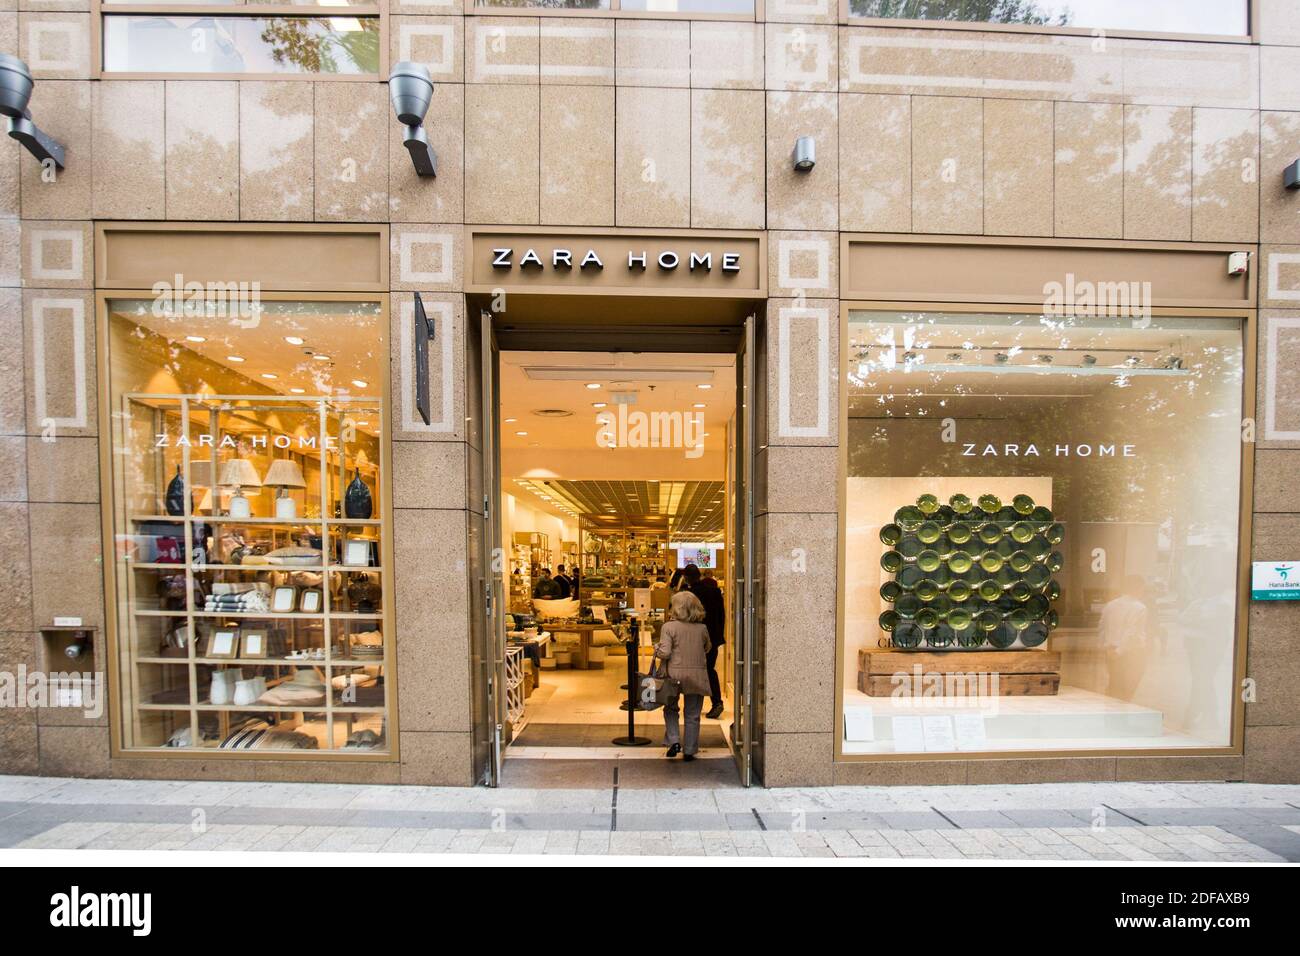 La società Zara prevede di chiudere tra i 1,000 e i 1,200 negozi tra i suoi  7,400 negozi in tutto il mondo. Obiettivo: Sfruttare il successo delle vendite  online durante Lockdown, il